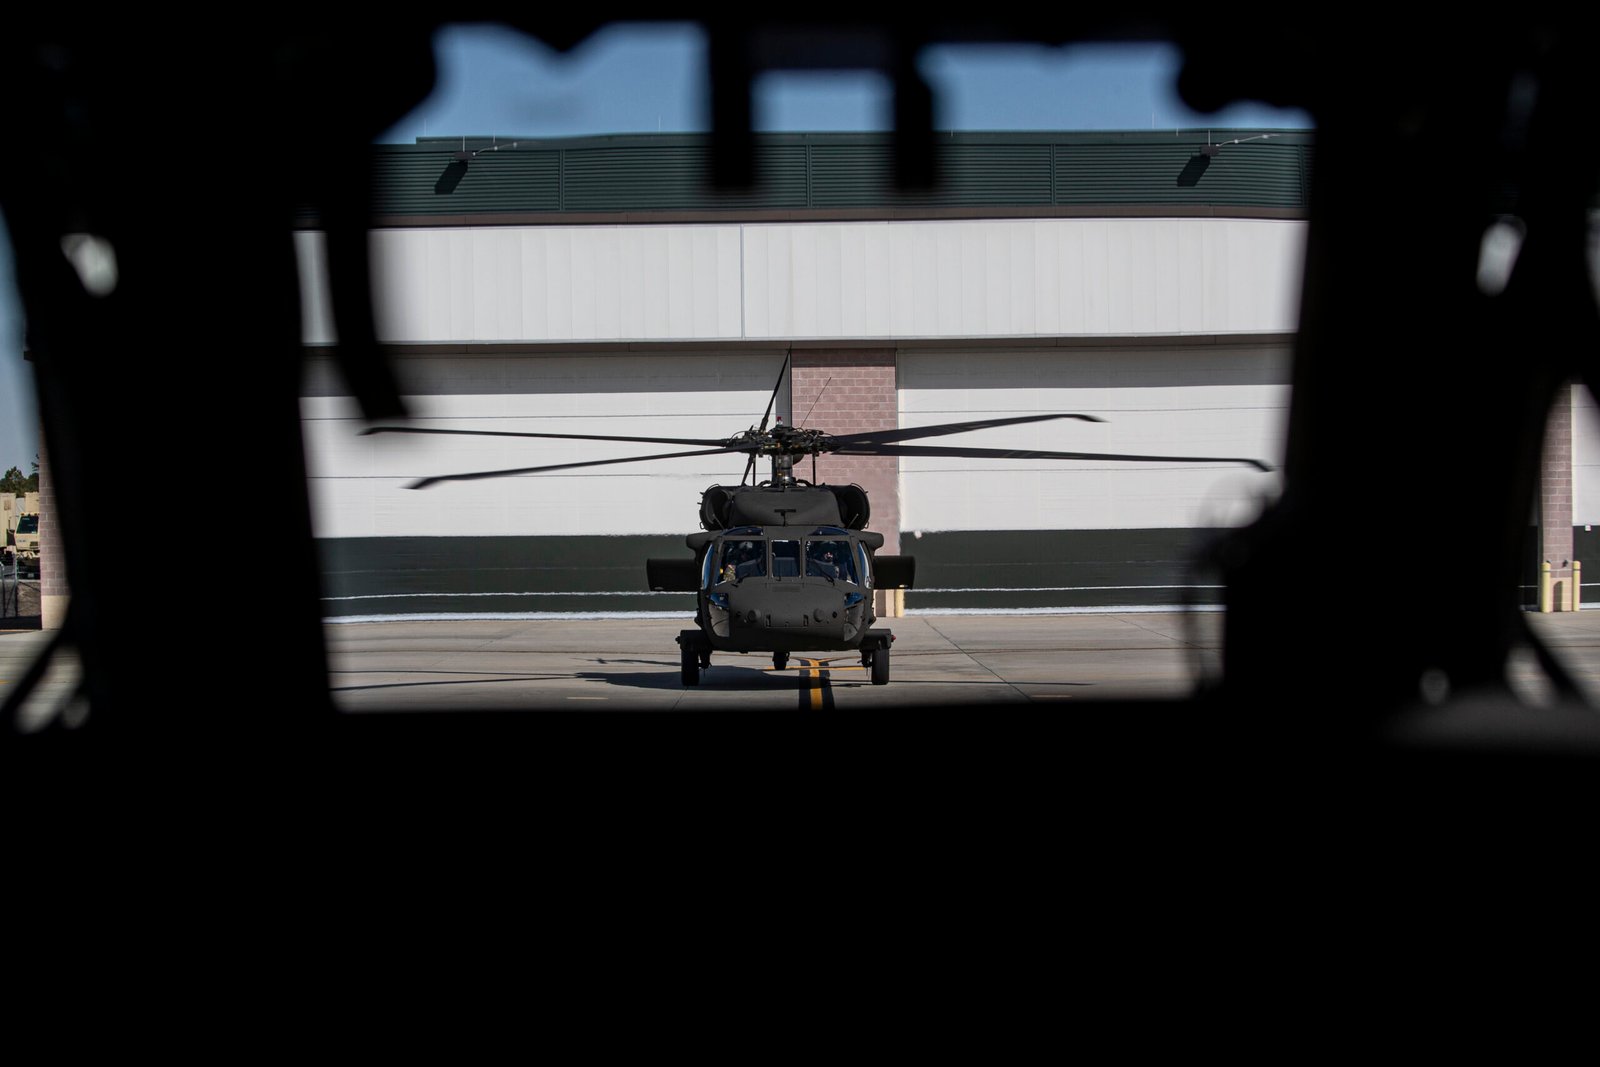 El Black Hawk es uno de los helicópteros militares más utilizados, con más de 5.000 unidades producidas en todas sus variantes. Foto: SMSgt Matt Hecht / Air National Guard